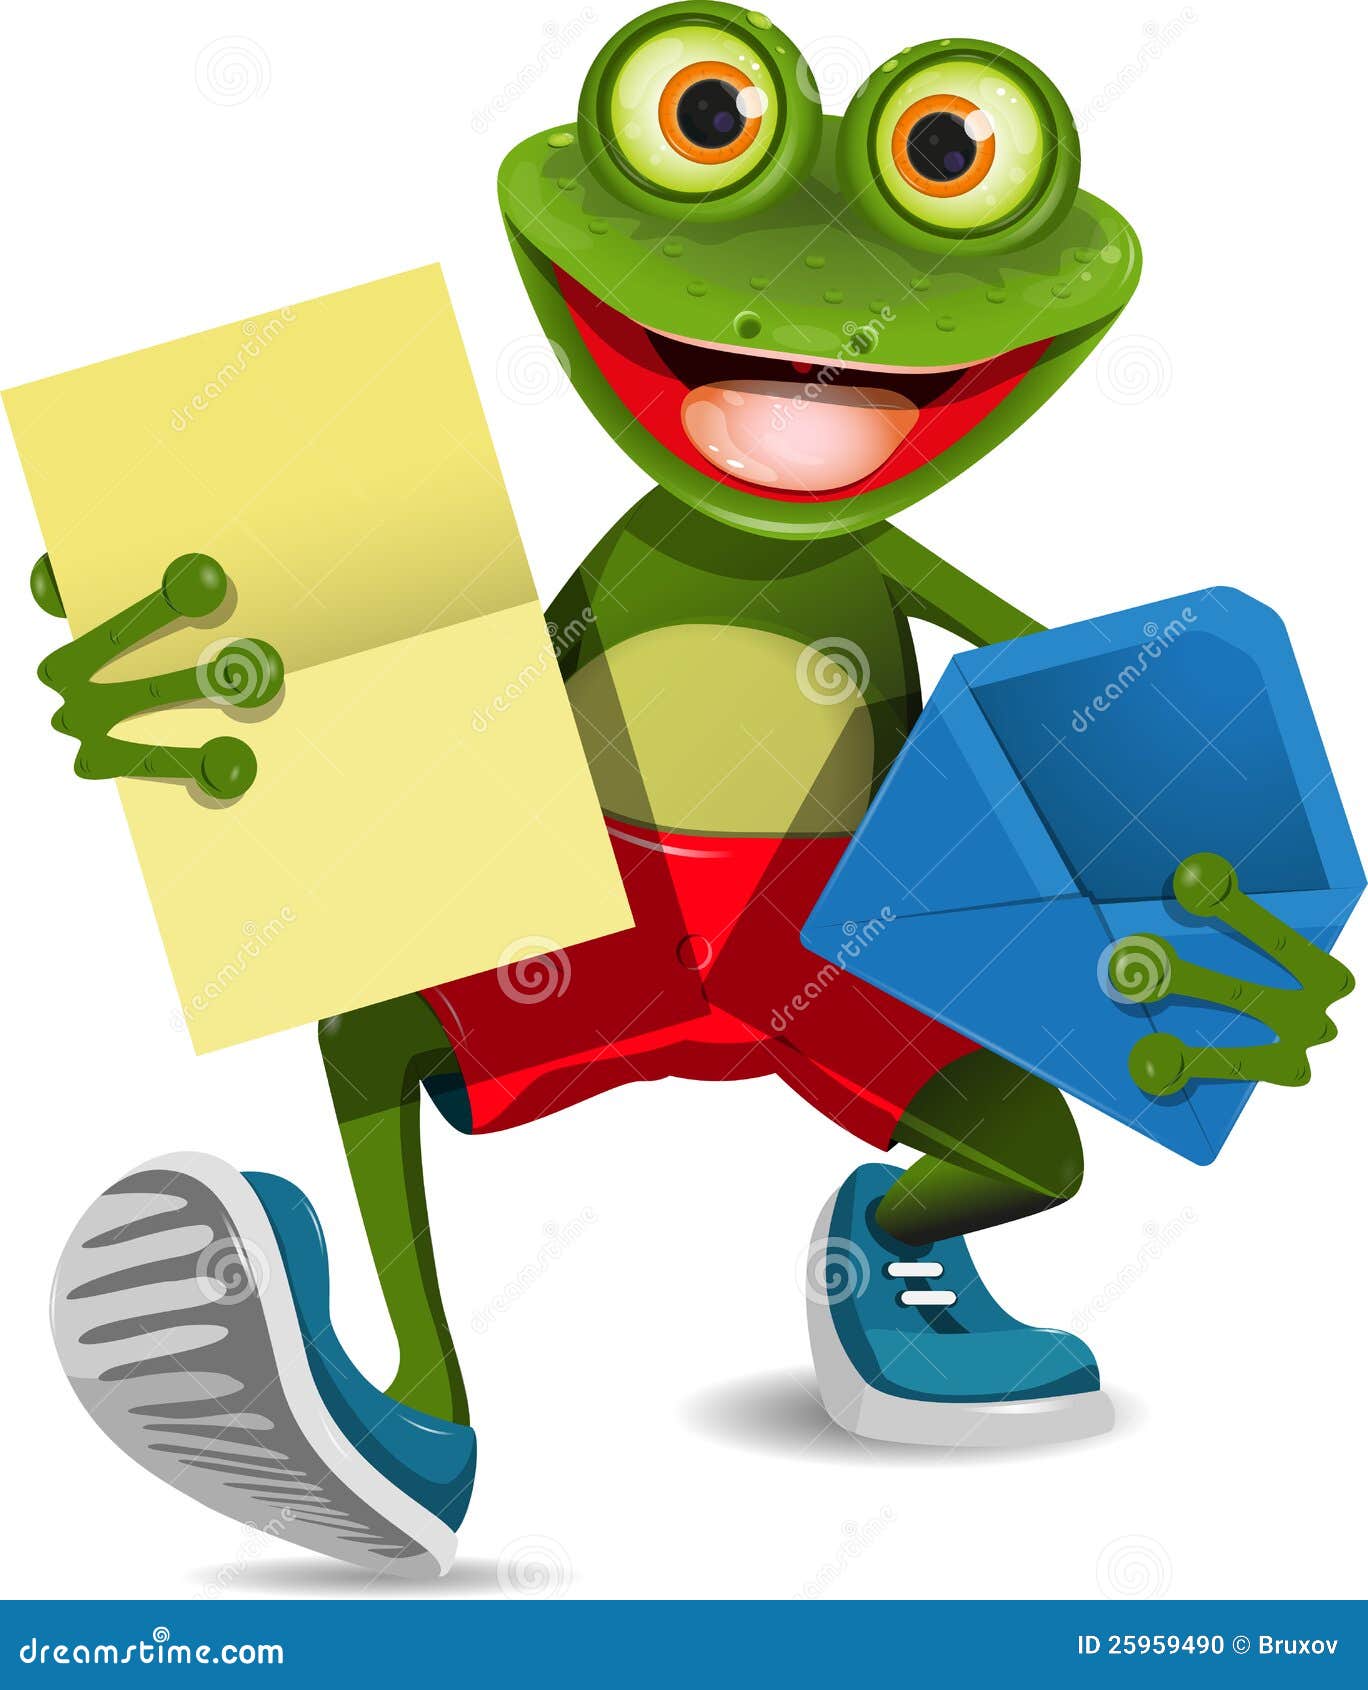 Image result for frog holding letter